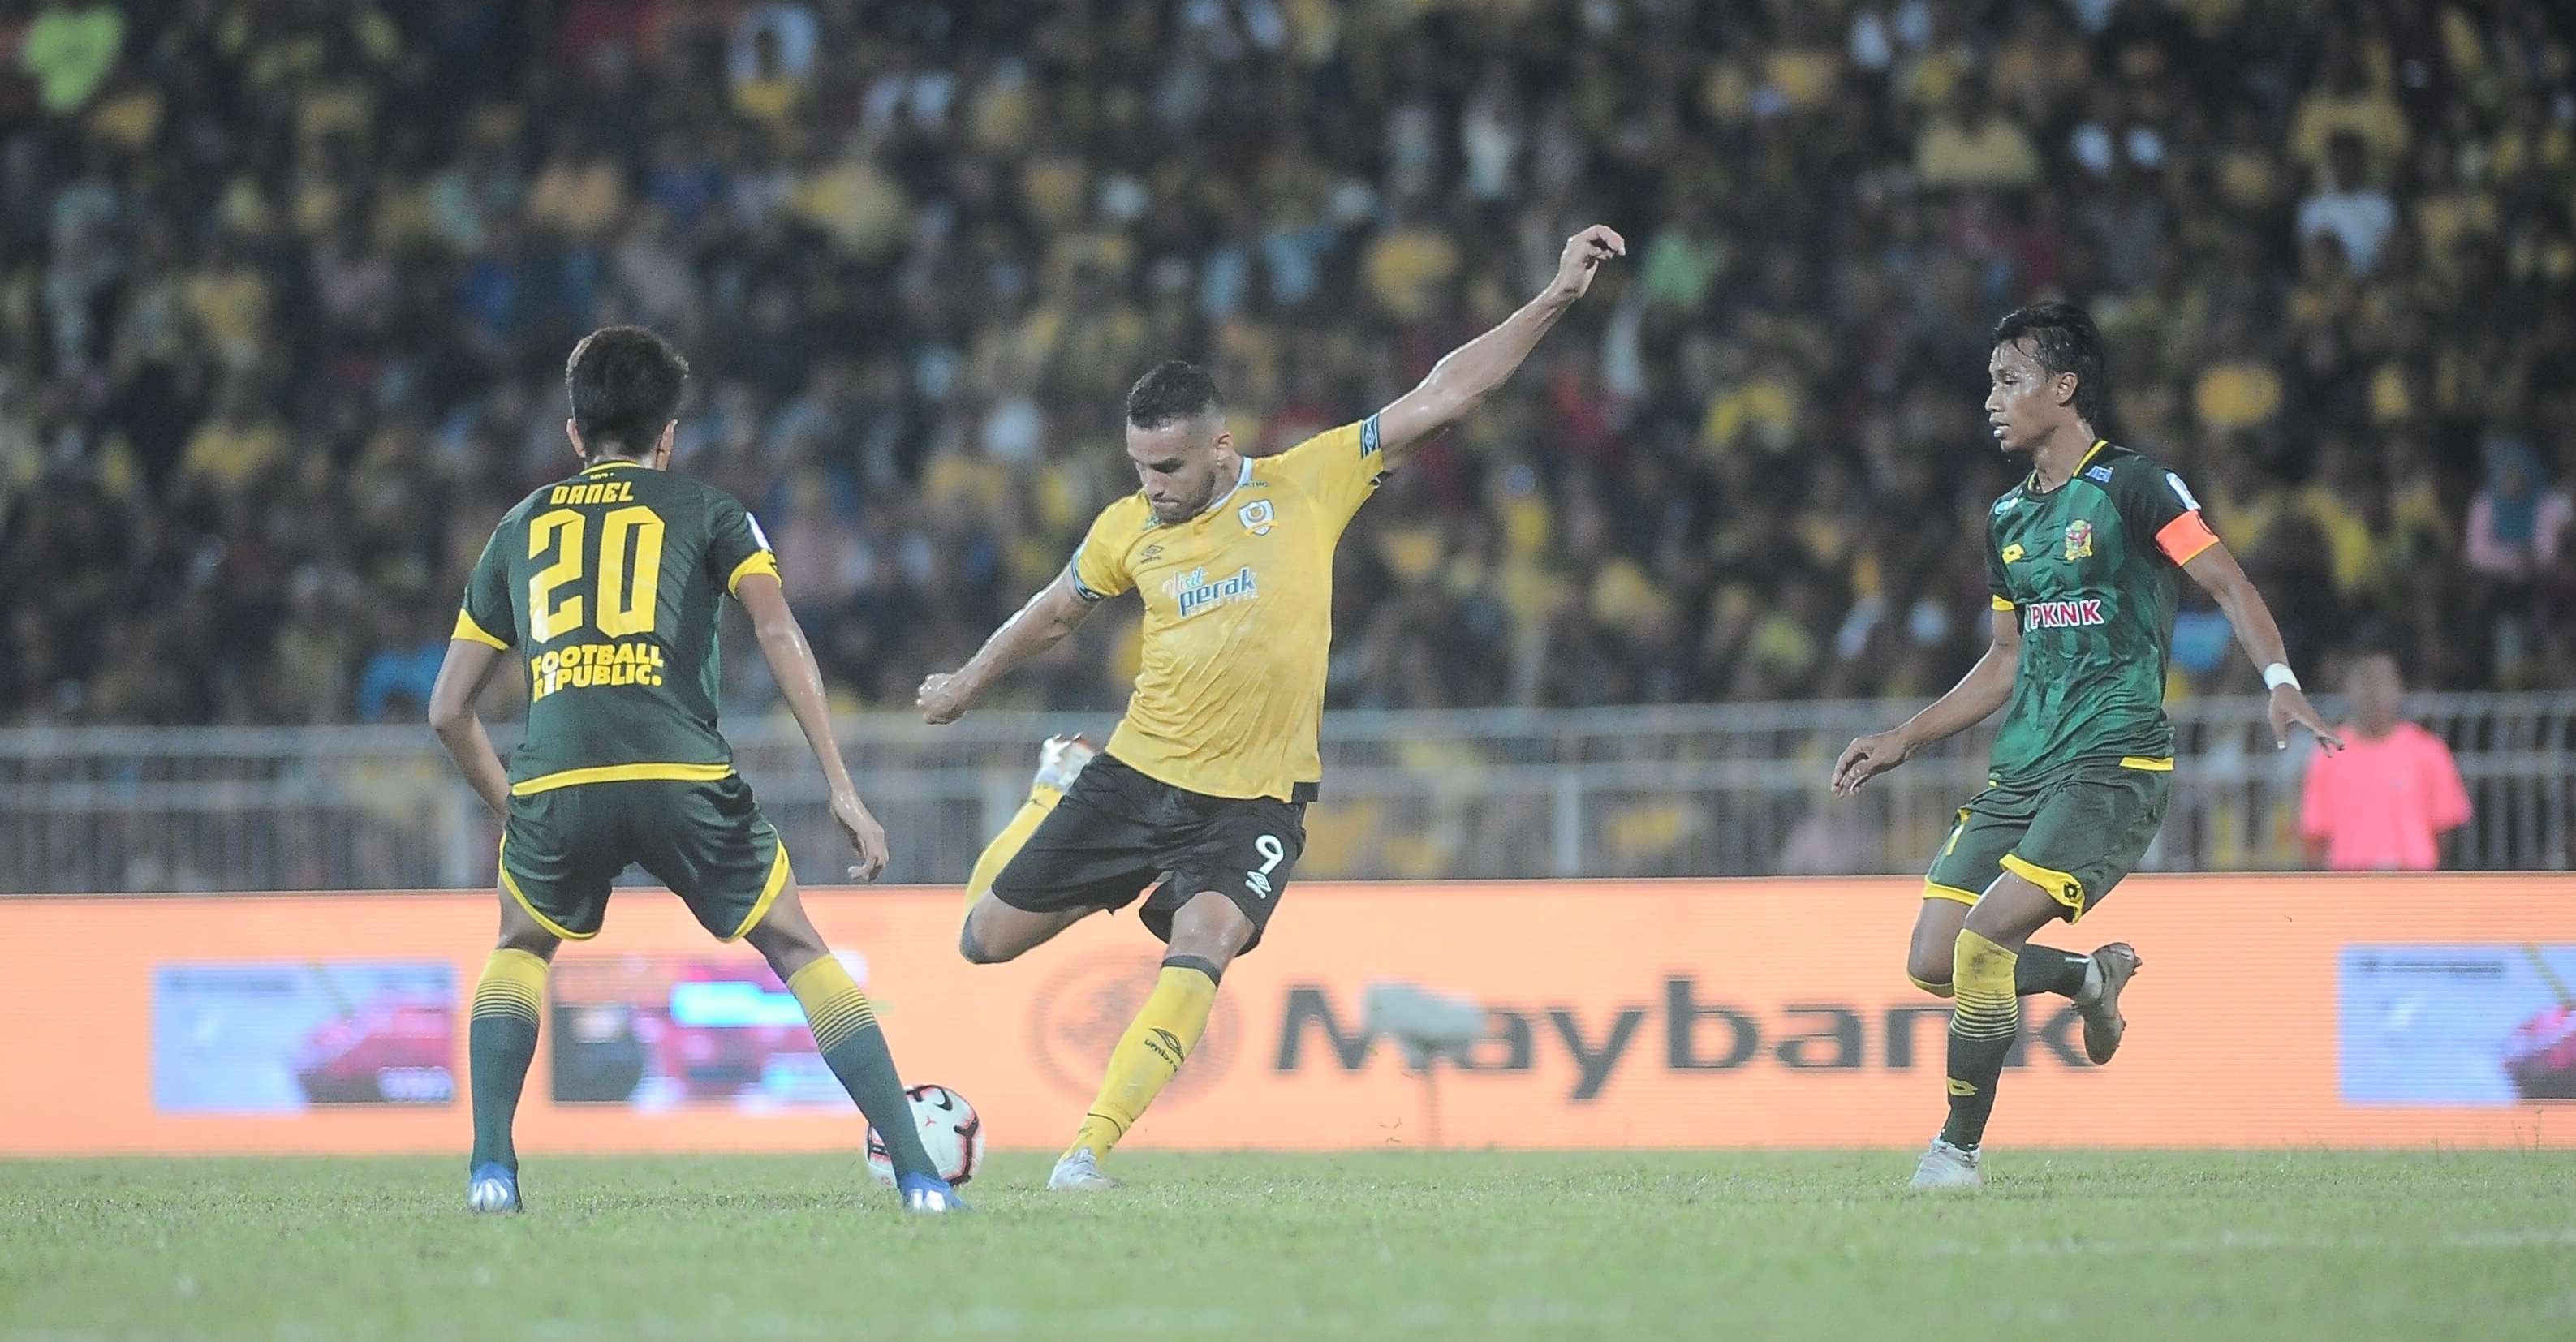 Gilmar Filho, Perak v Kedah, Feb 8 2019, Super League